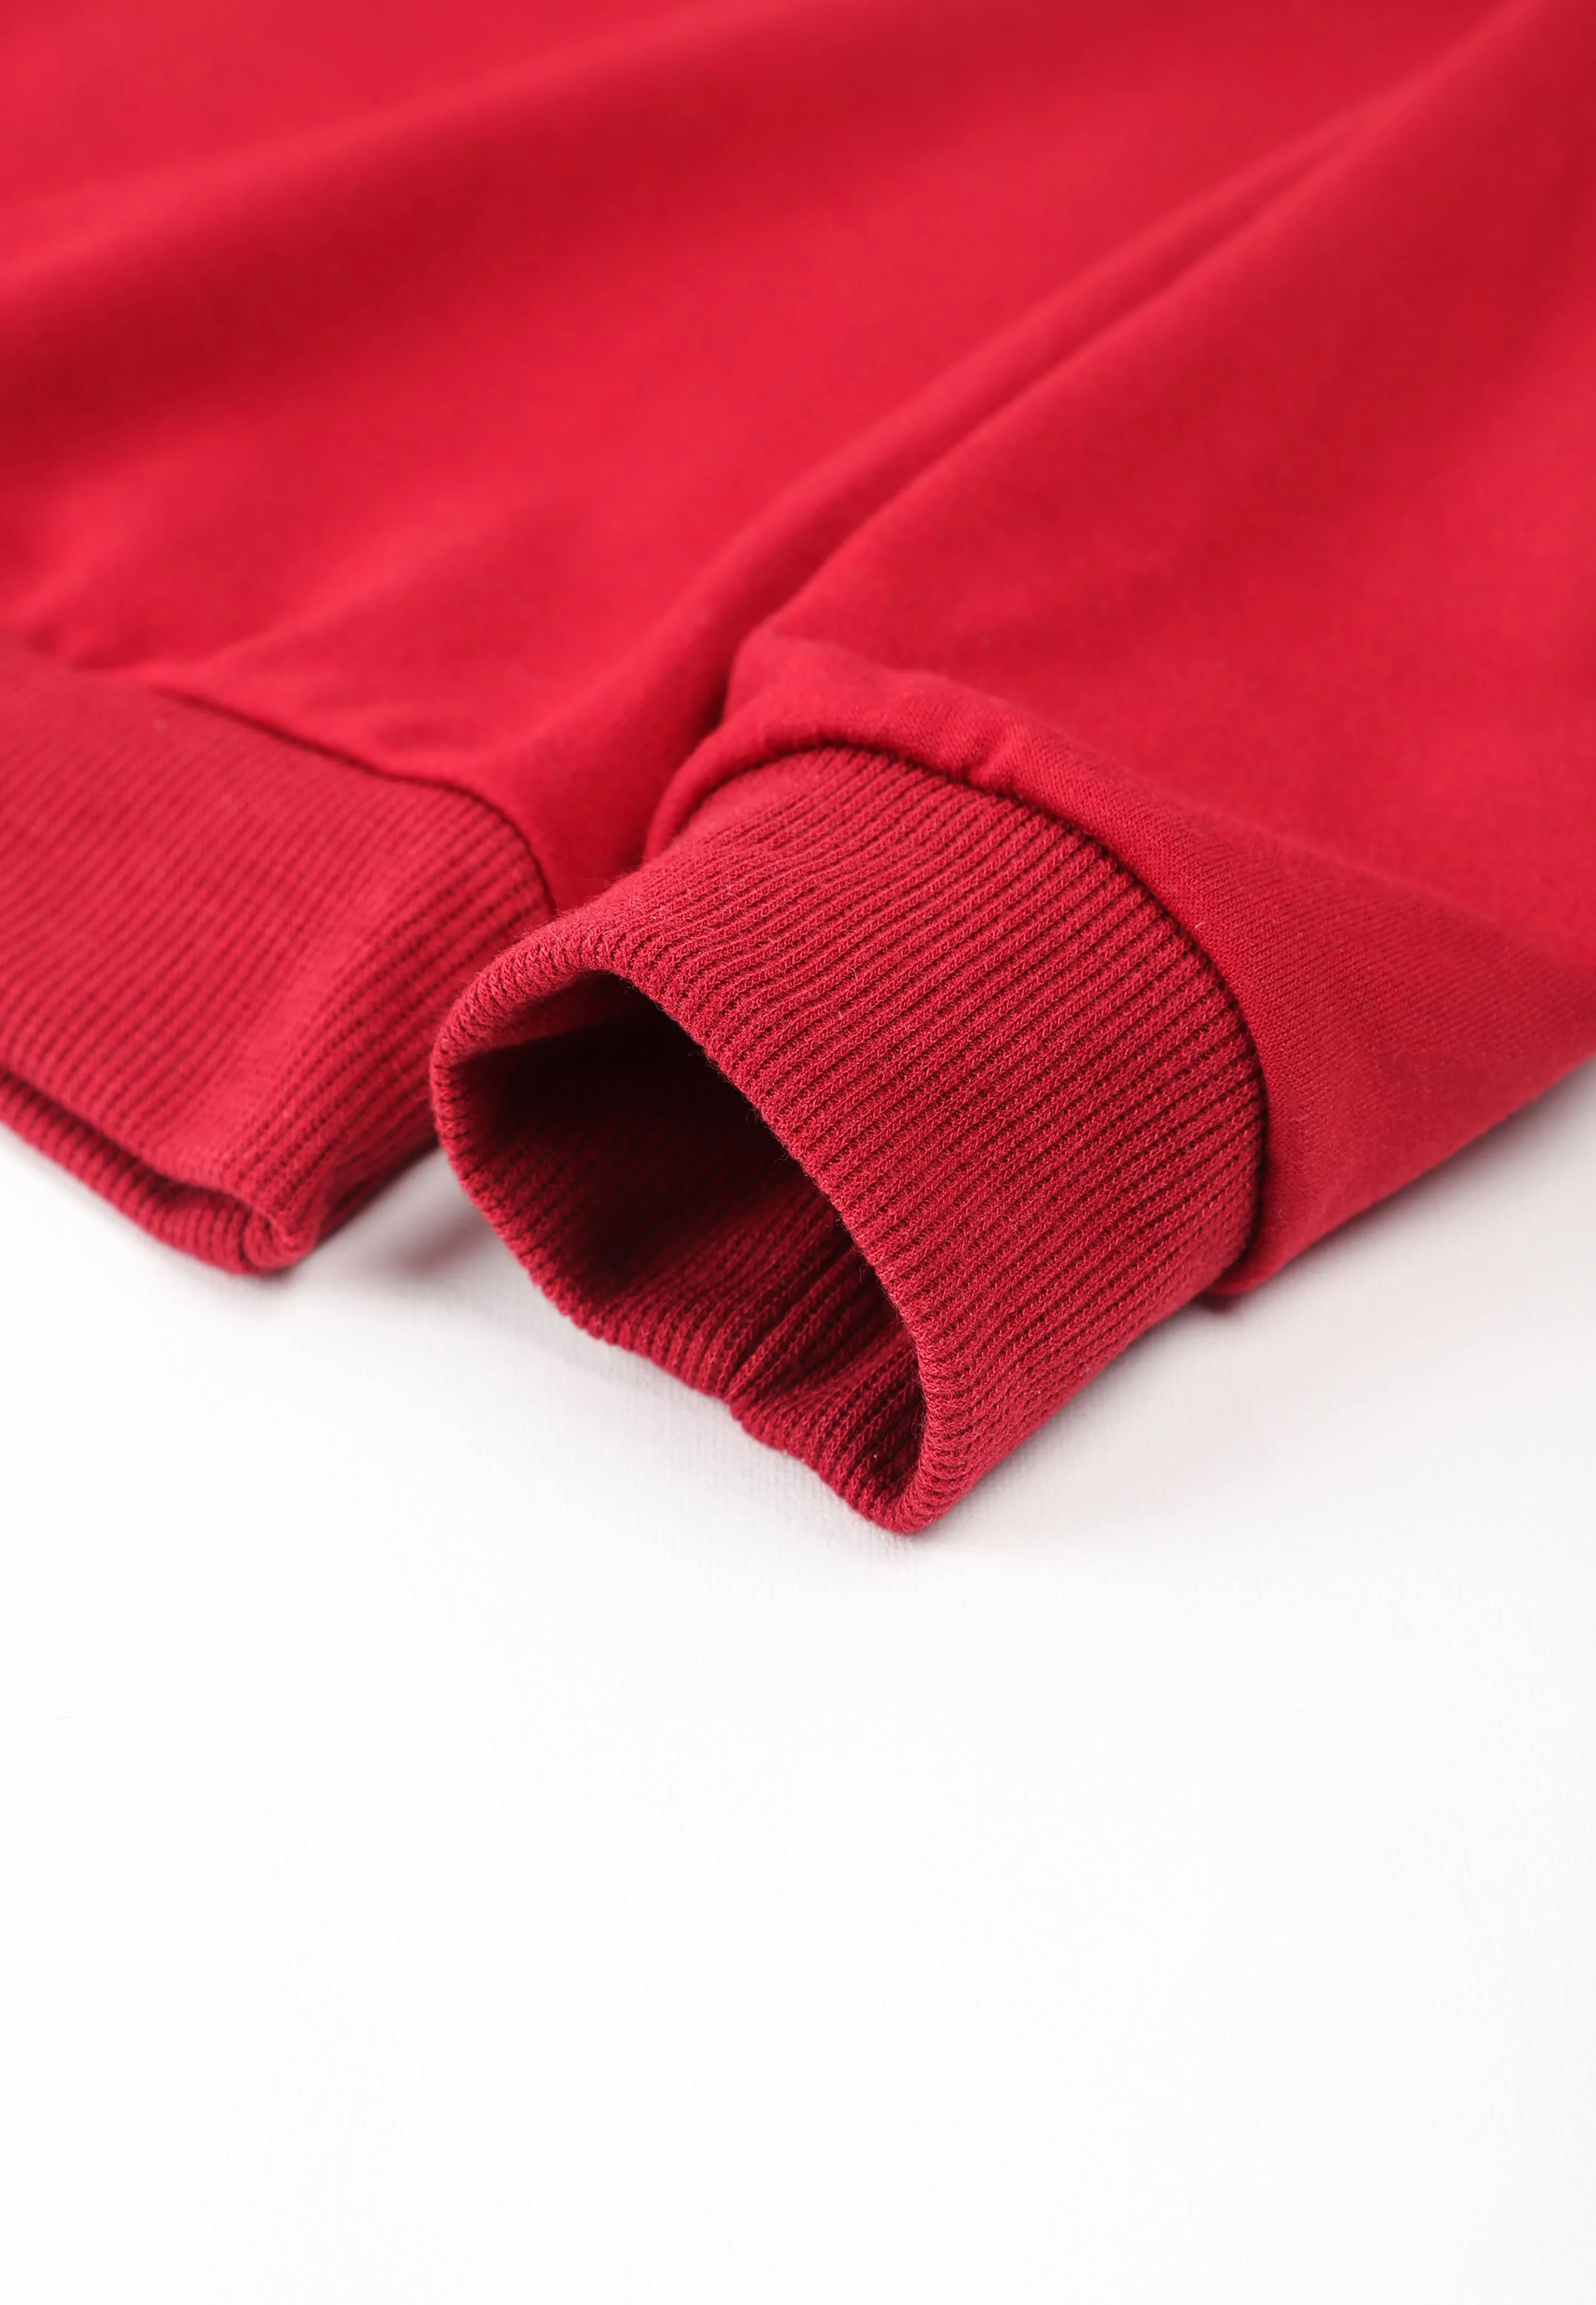 Облекло Lucky Kids, червен hoody с кръгло деколте и дълги ръкави за момчета и момичета, модни эстетичные детски качулки в стил харадзюку, пролет-есен